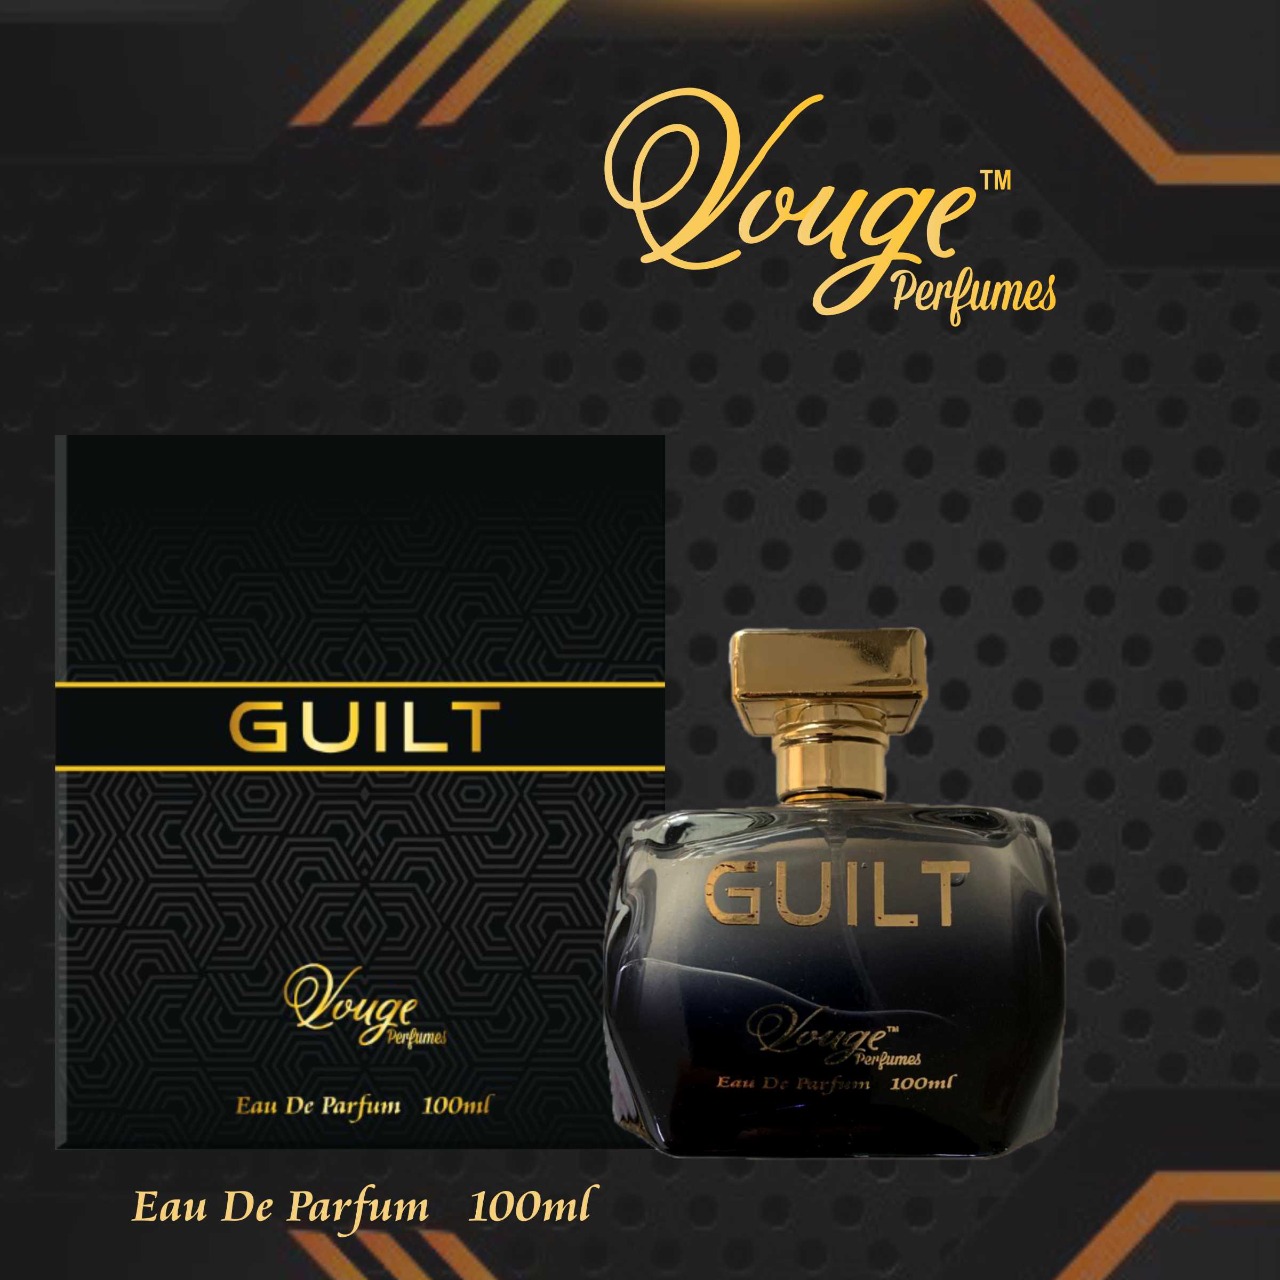 Vouge Perfume - Guilt from Alminar fragnance